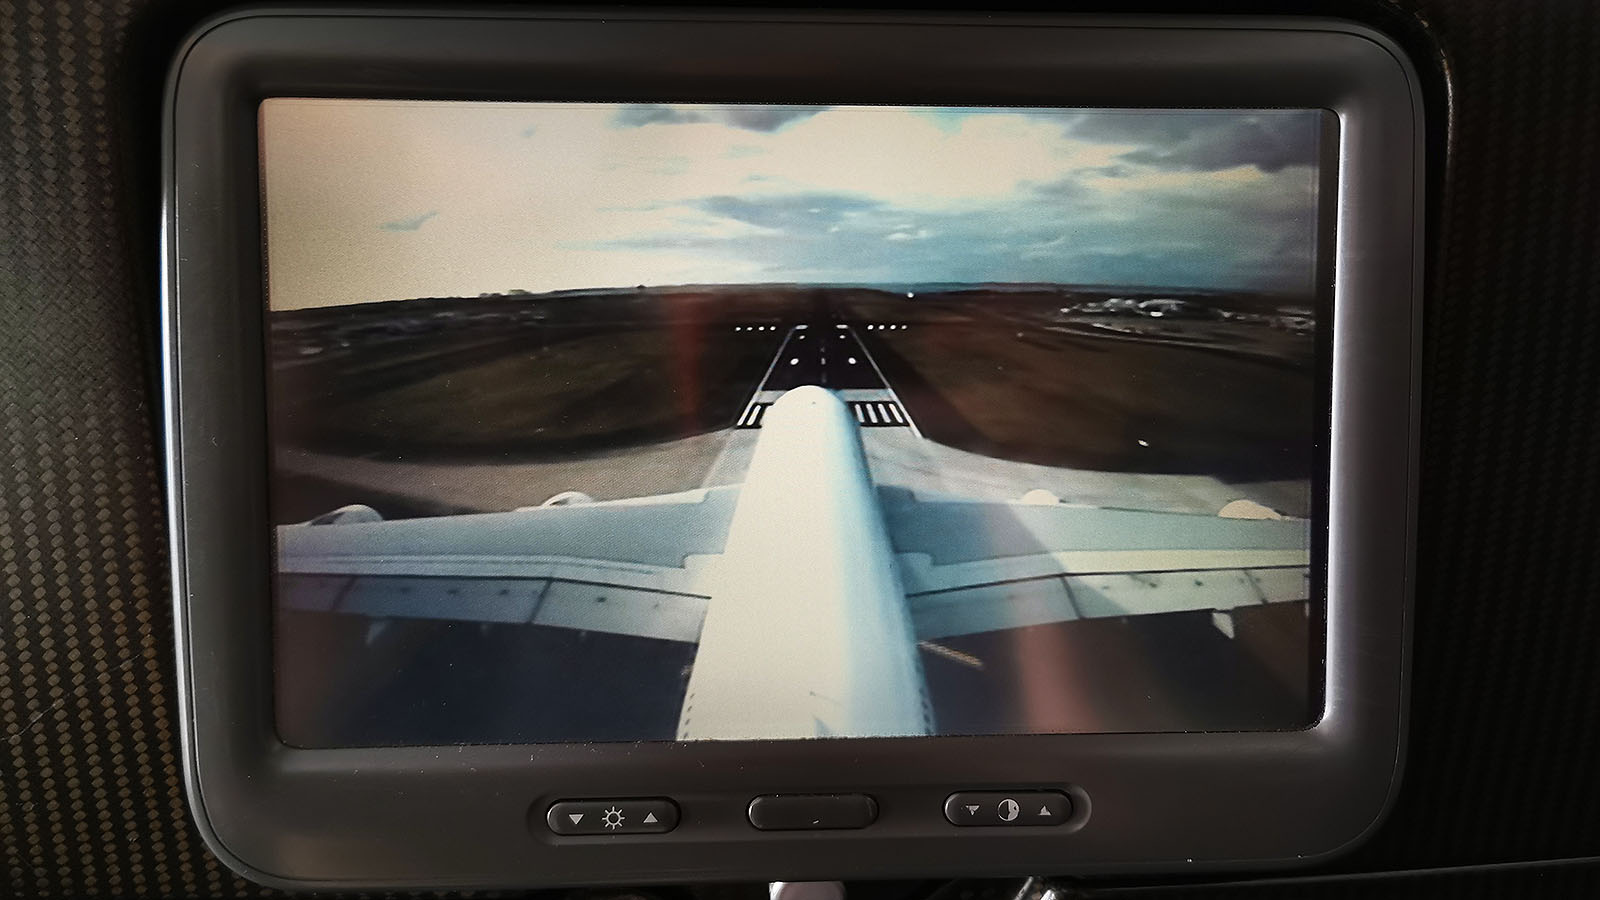 Skycam in Qantas Airbus A380 Economy